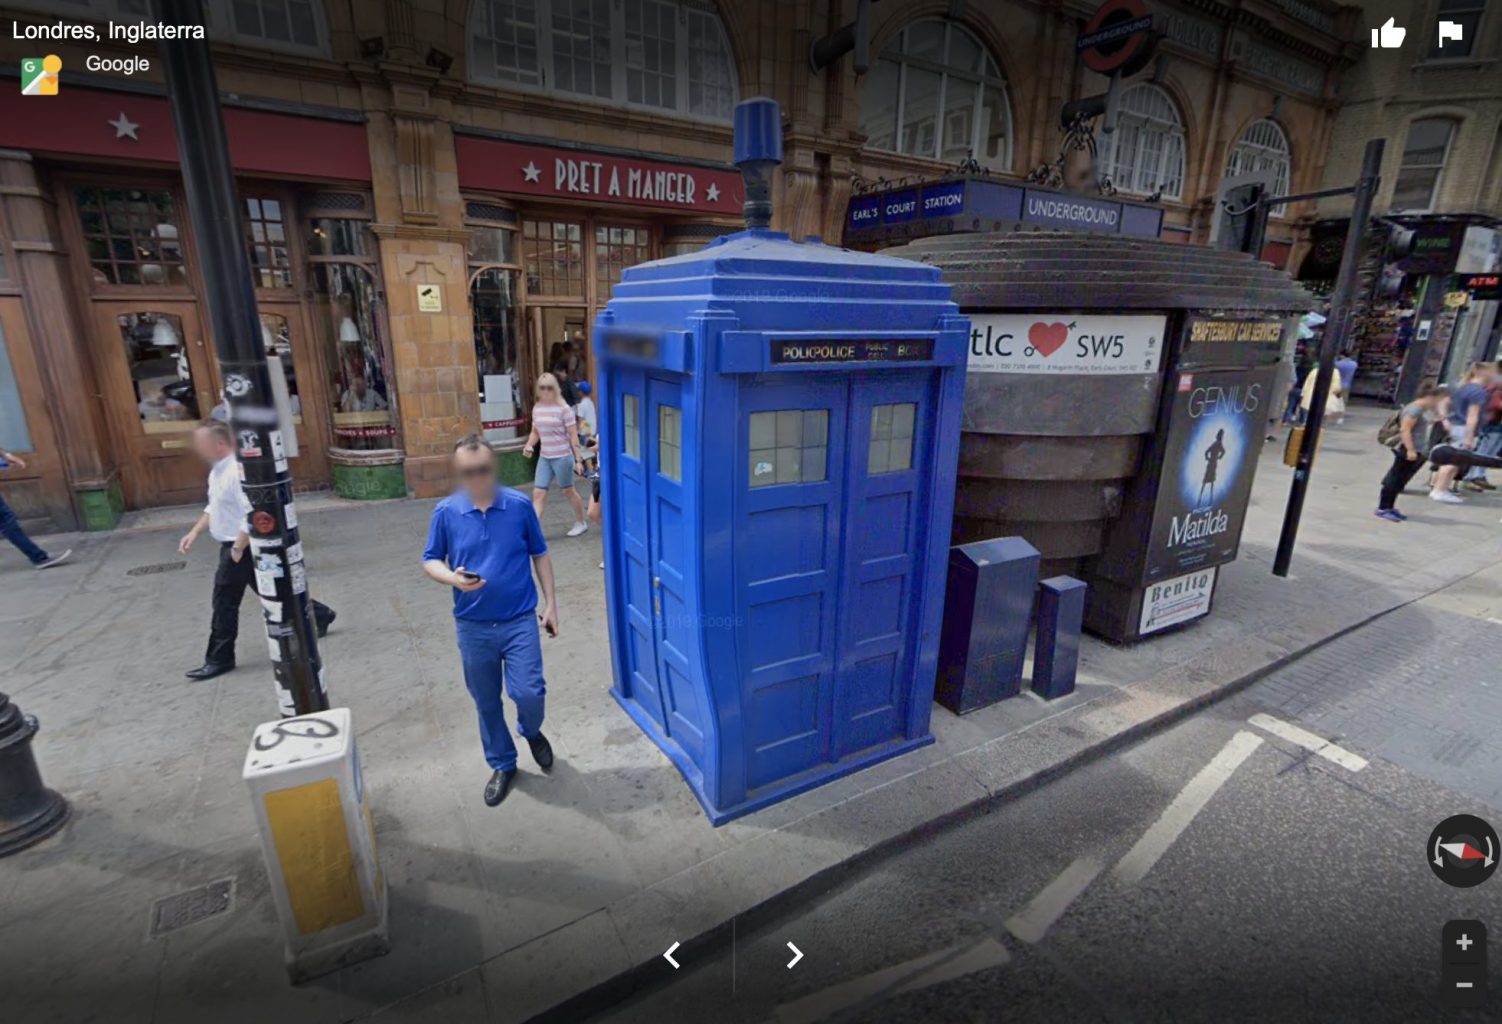 La TARDIS de Doctor Who en Londres . Secretos y Curiosidades de Google Maps